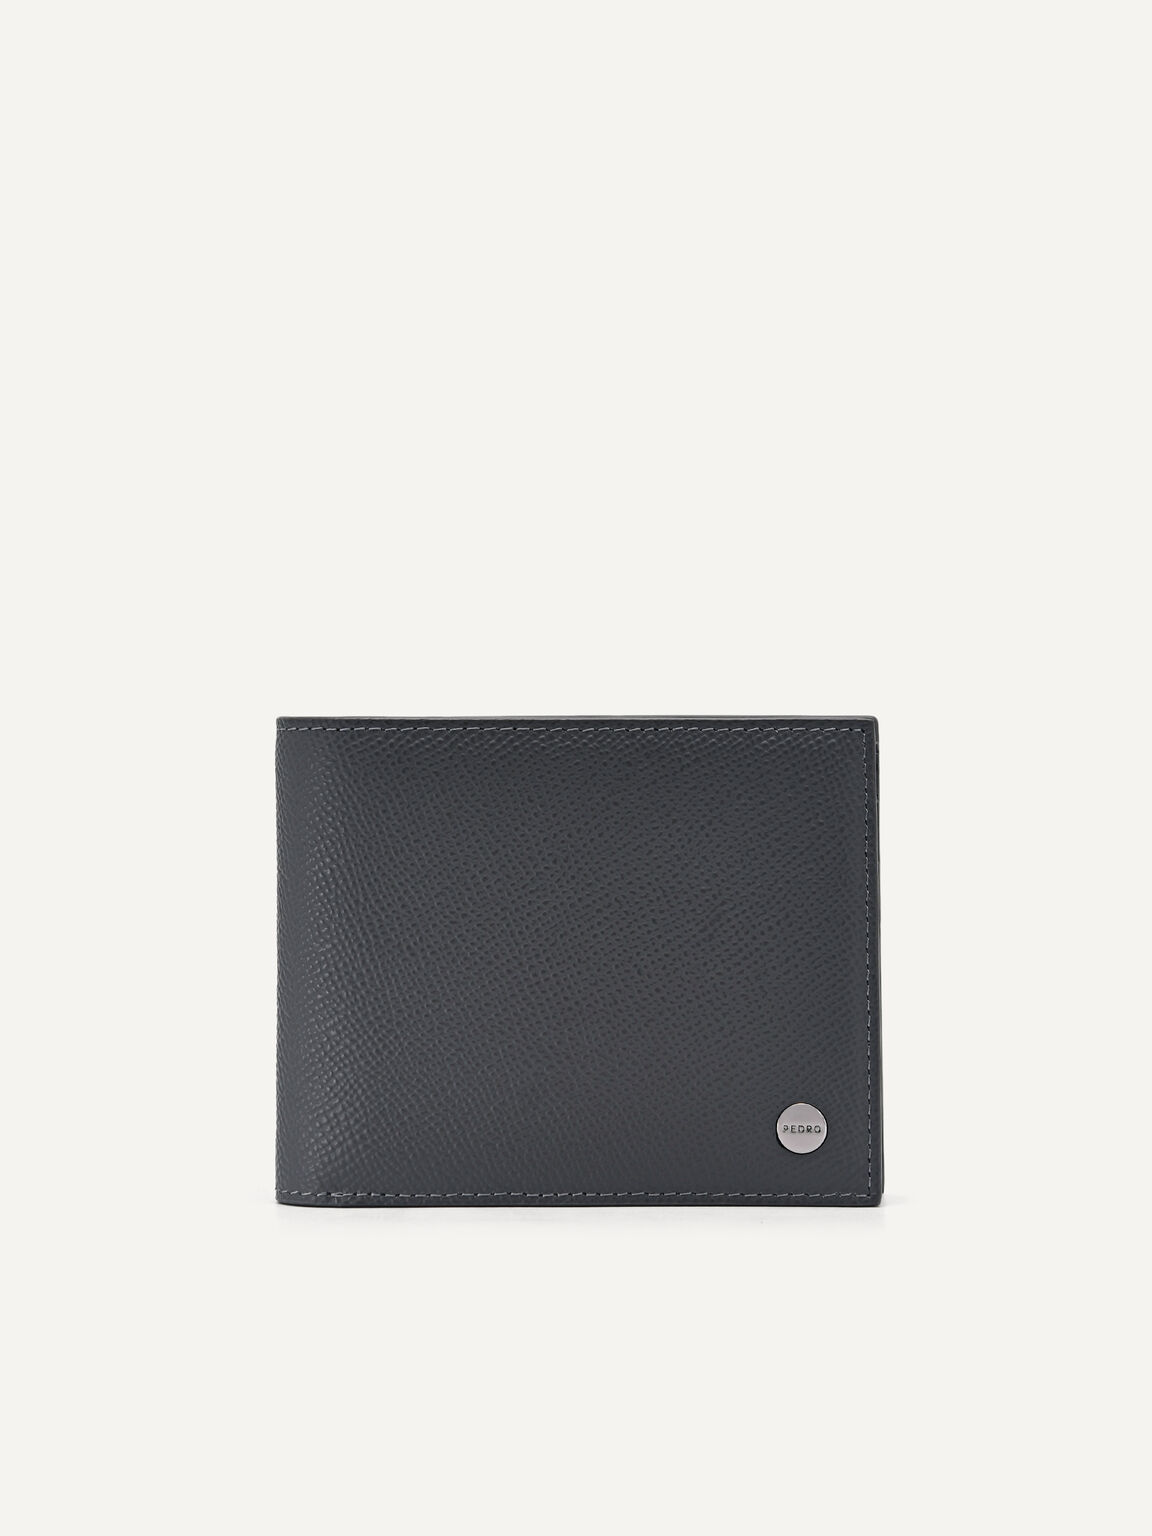 Oliver Leather Bi-Fold Wallet with Insert, Dark Grey, hi-res